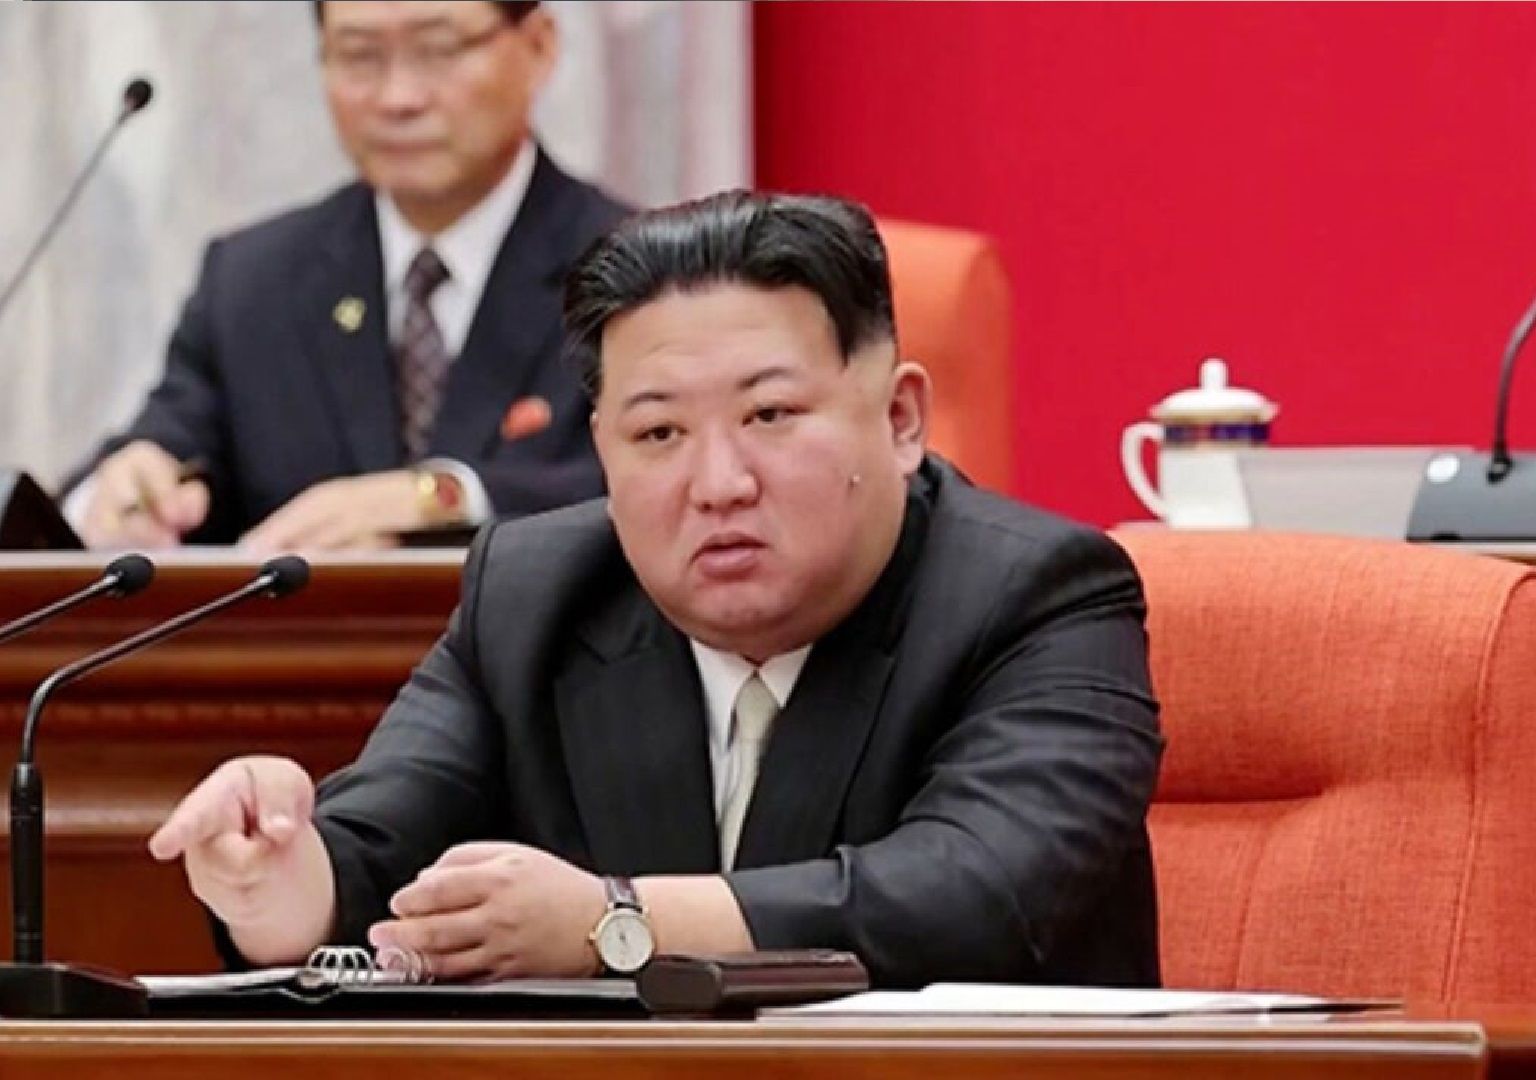 واکنش سئول به سخنان رهبر کره شمالی در مورد جنگ 